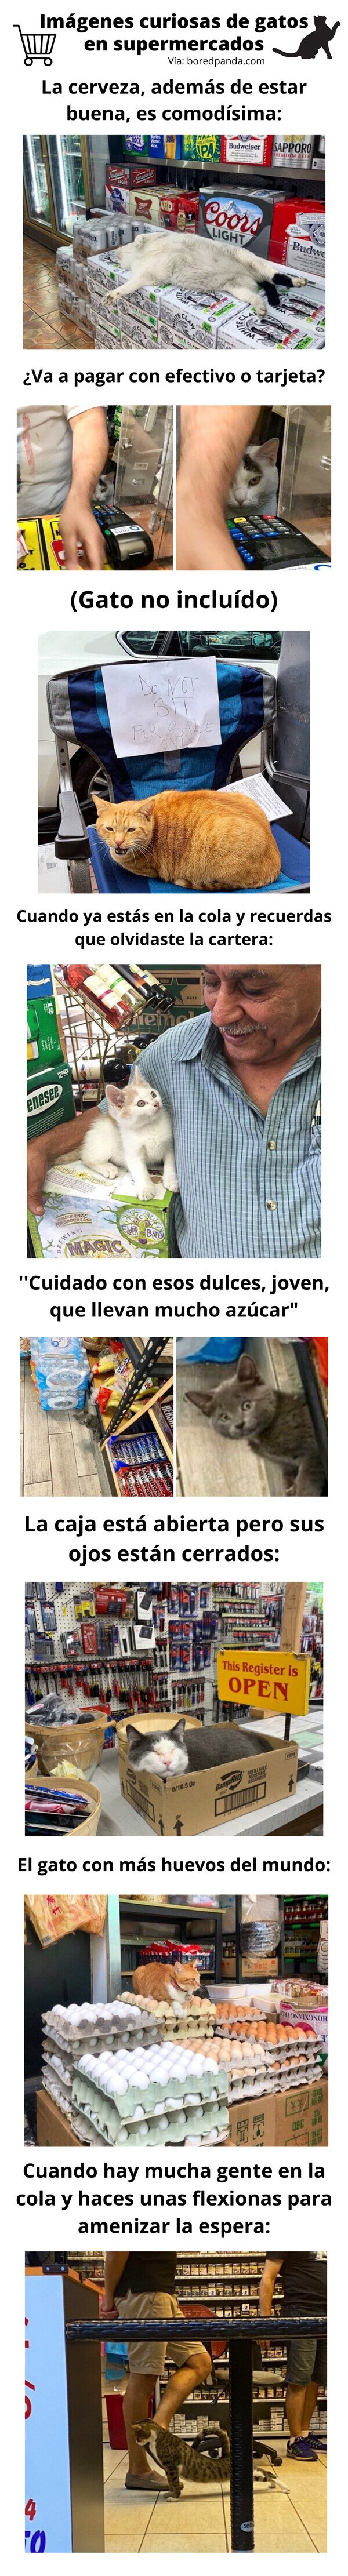 Meme_otros - Imágenes curiosas de gatos en supermercados